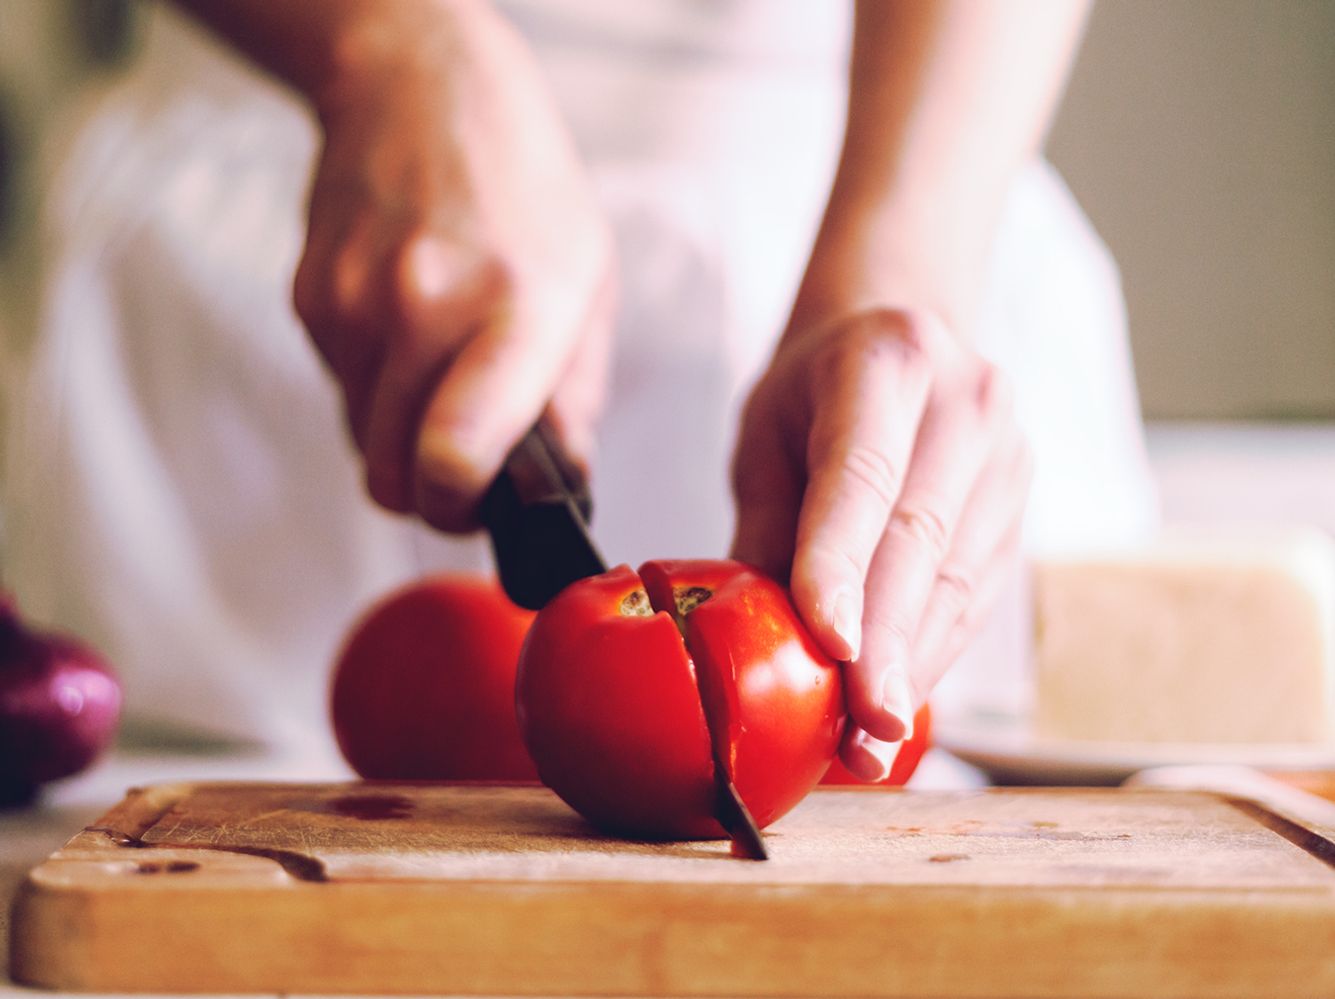 Wenn du Tomaten isst, tust du deinem Körper etwas Gutes.